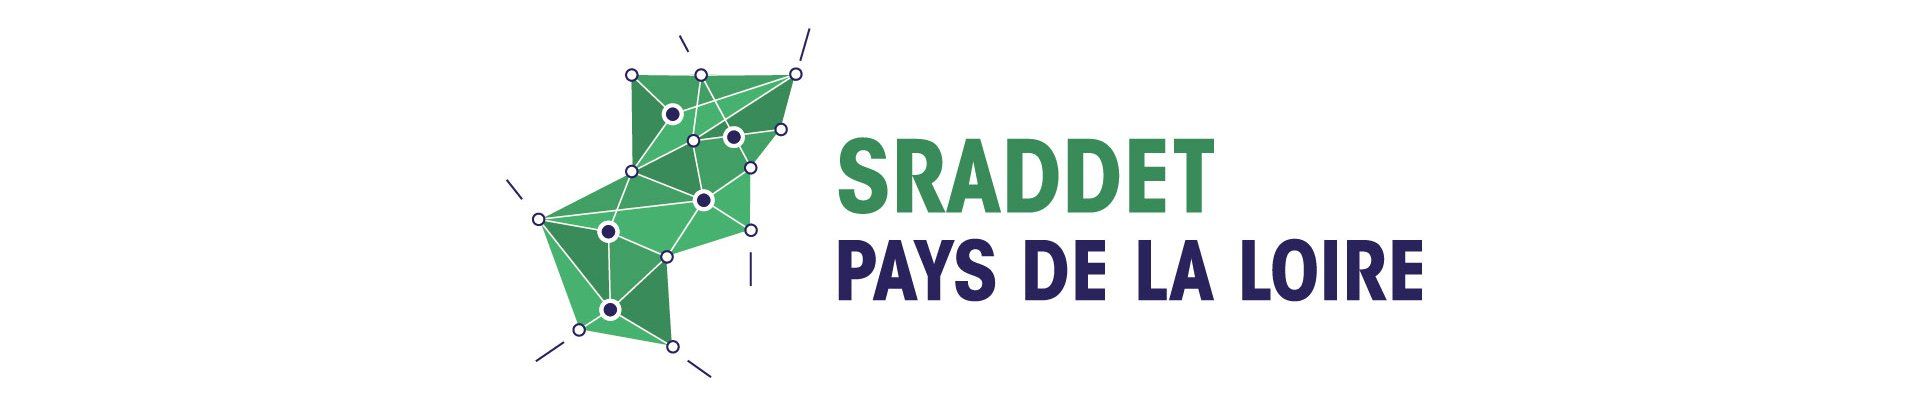 SRADDET Pays de la Loire